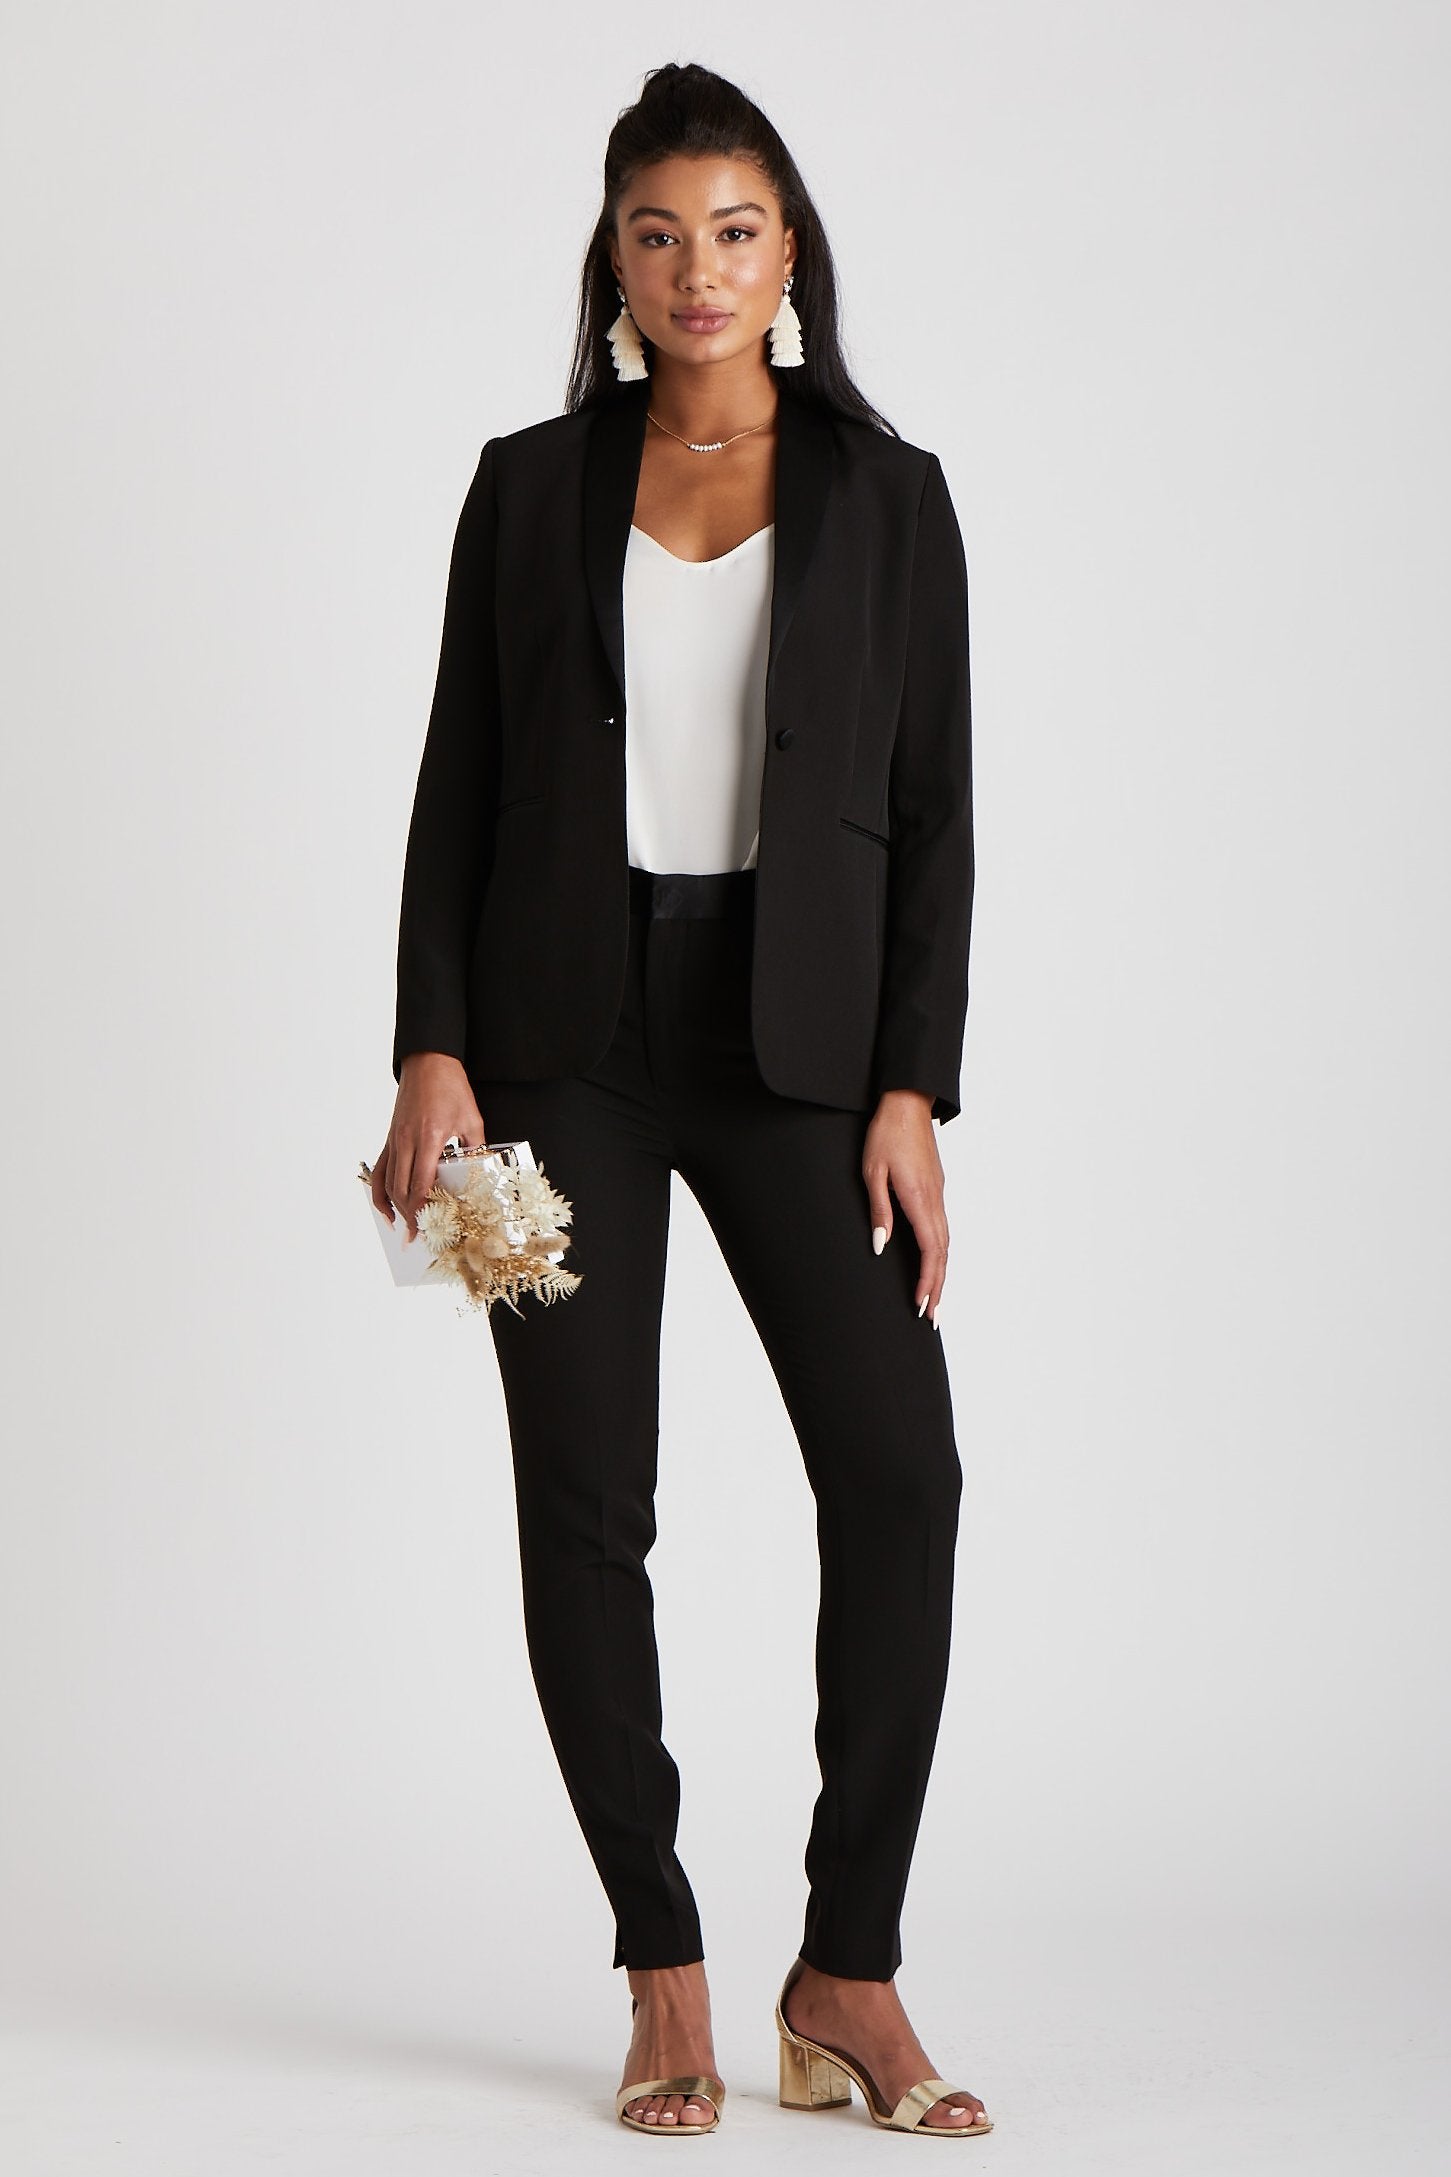 Women's Black Tuxedo by SuitShop, front view